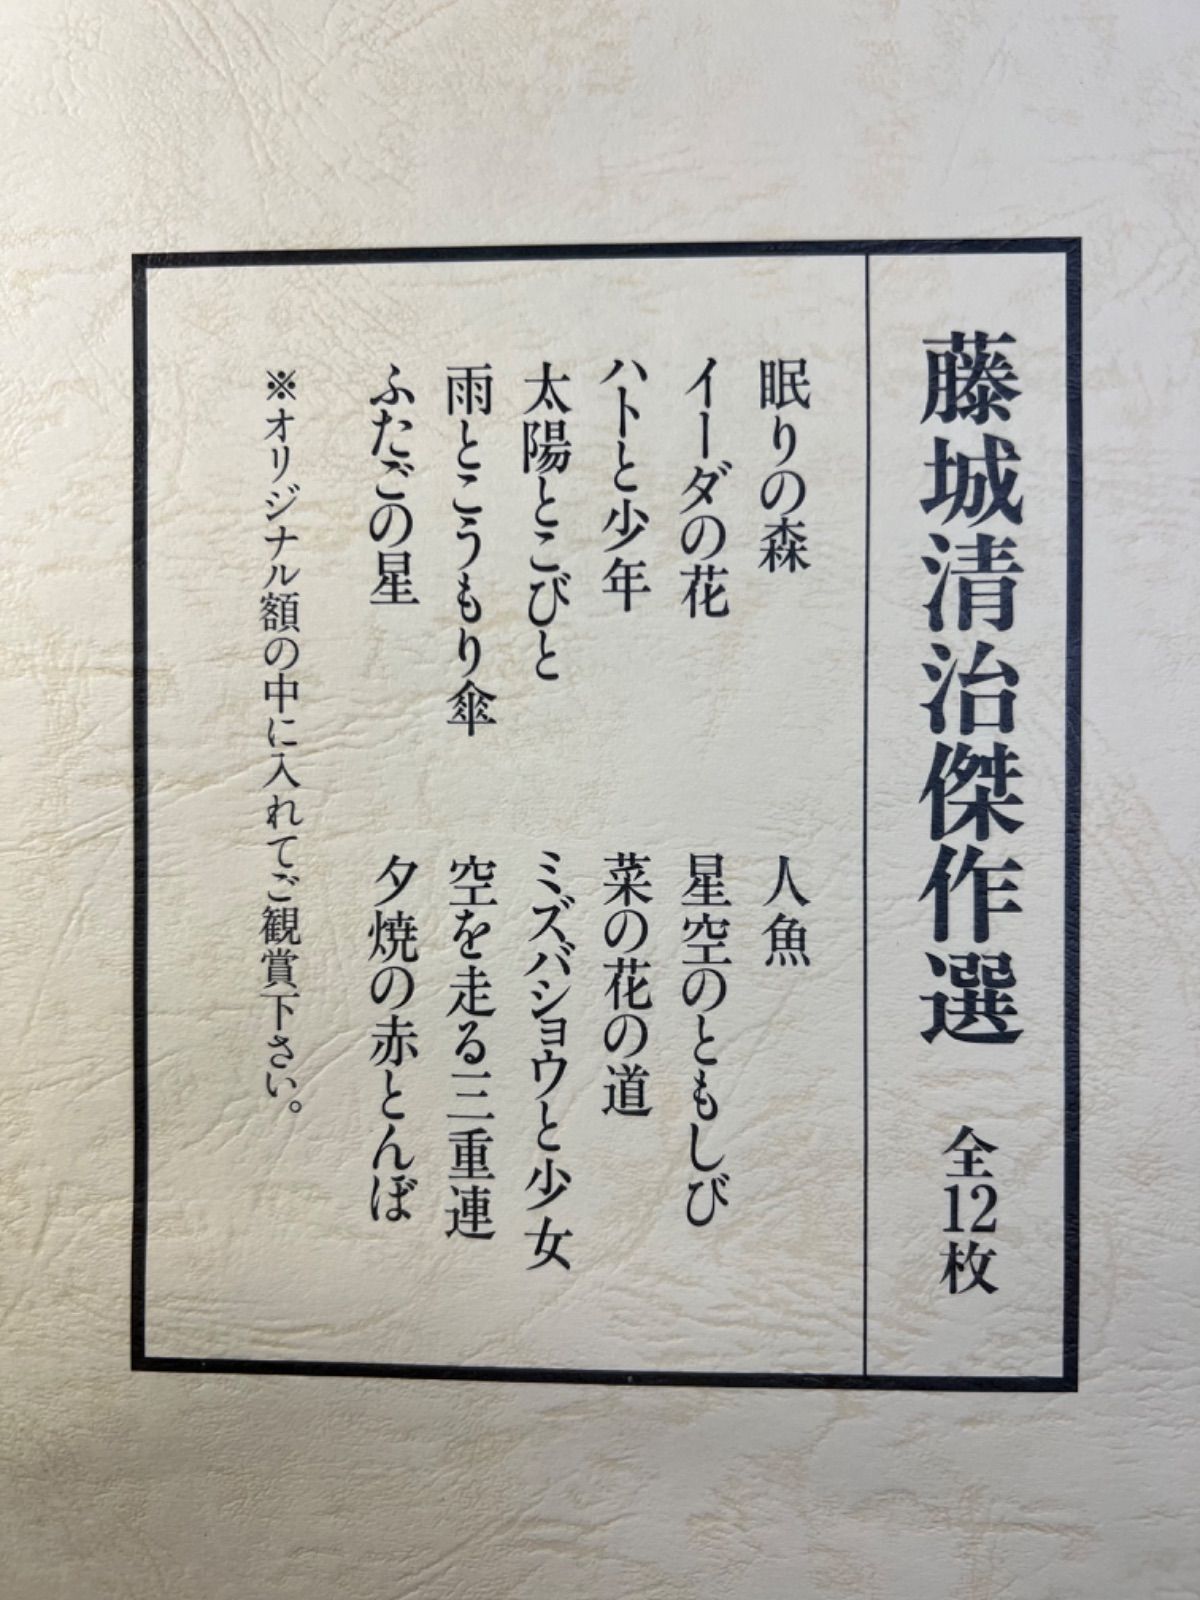 藤城清治傑作選 全12枚 影絵の世界 ほるぷ出版 昭和56年 - メルカリ